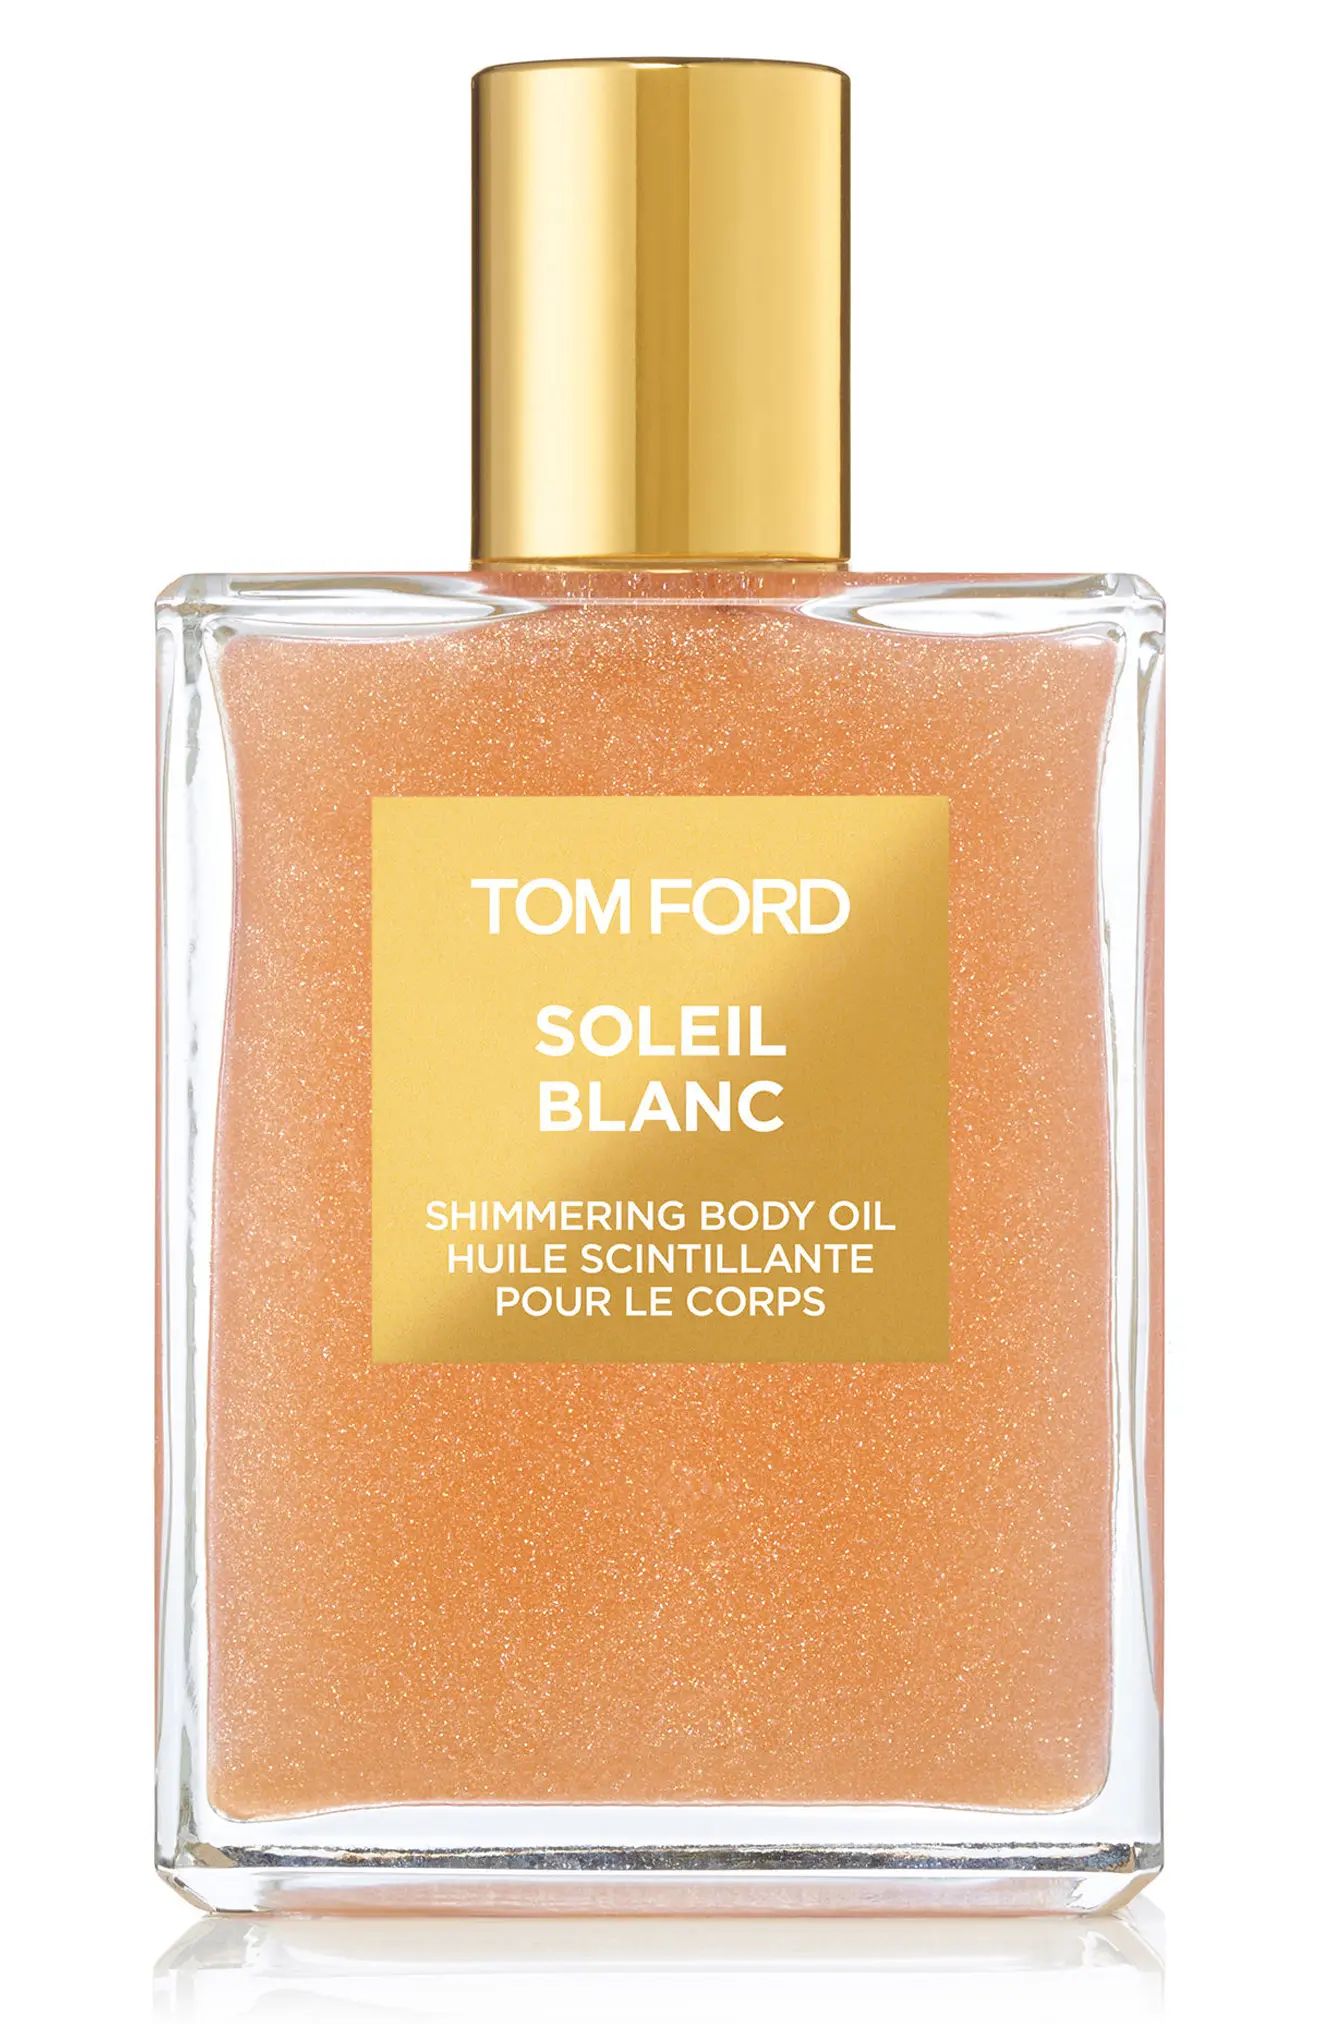 Tom Ford Soleil Blanc Shimmering Body Oil in Rose Gold at Nordstrom | Nordstrom